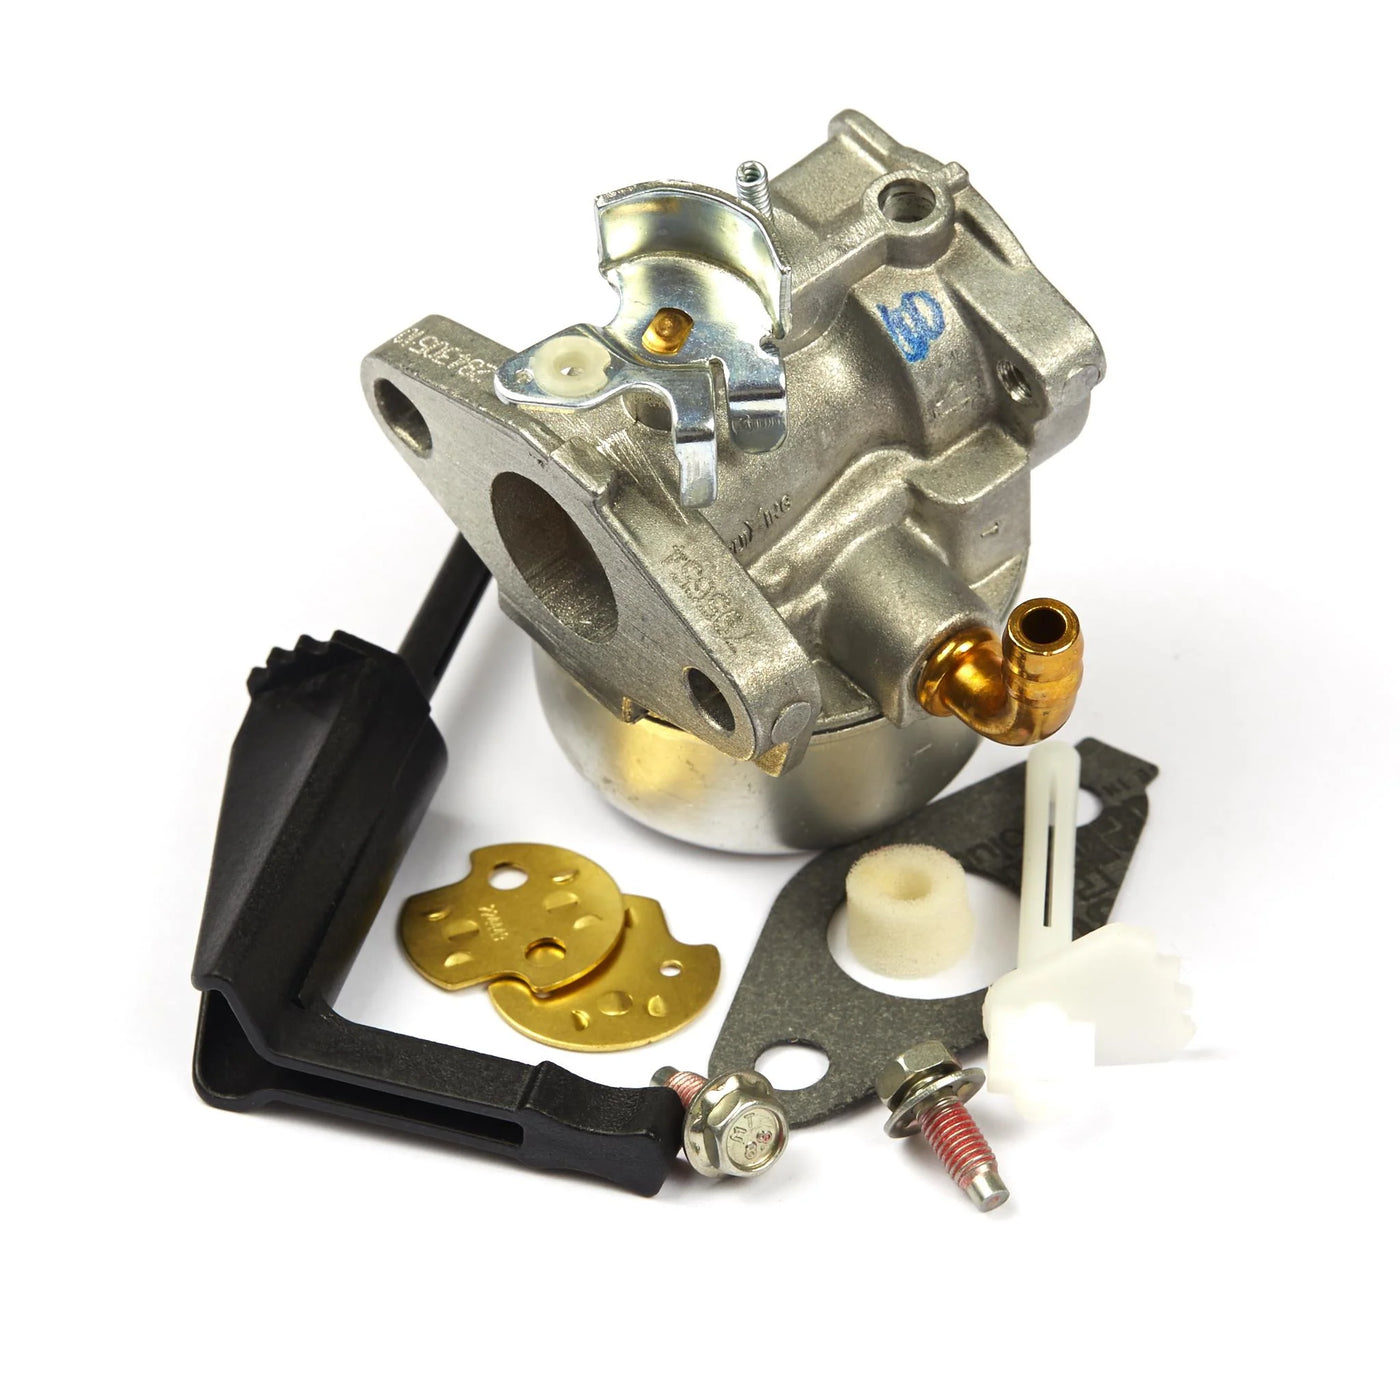 Briggs & Stratton 120000/121000 Intek Carburetor Replacement Kit 798653